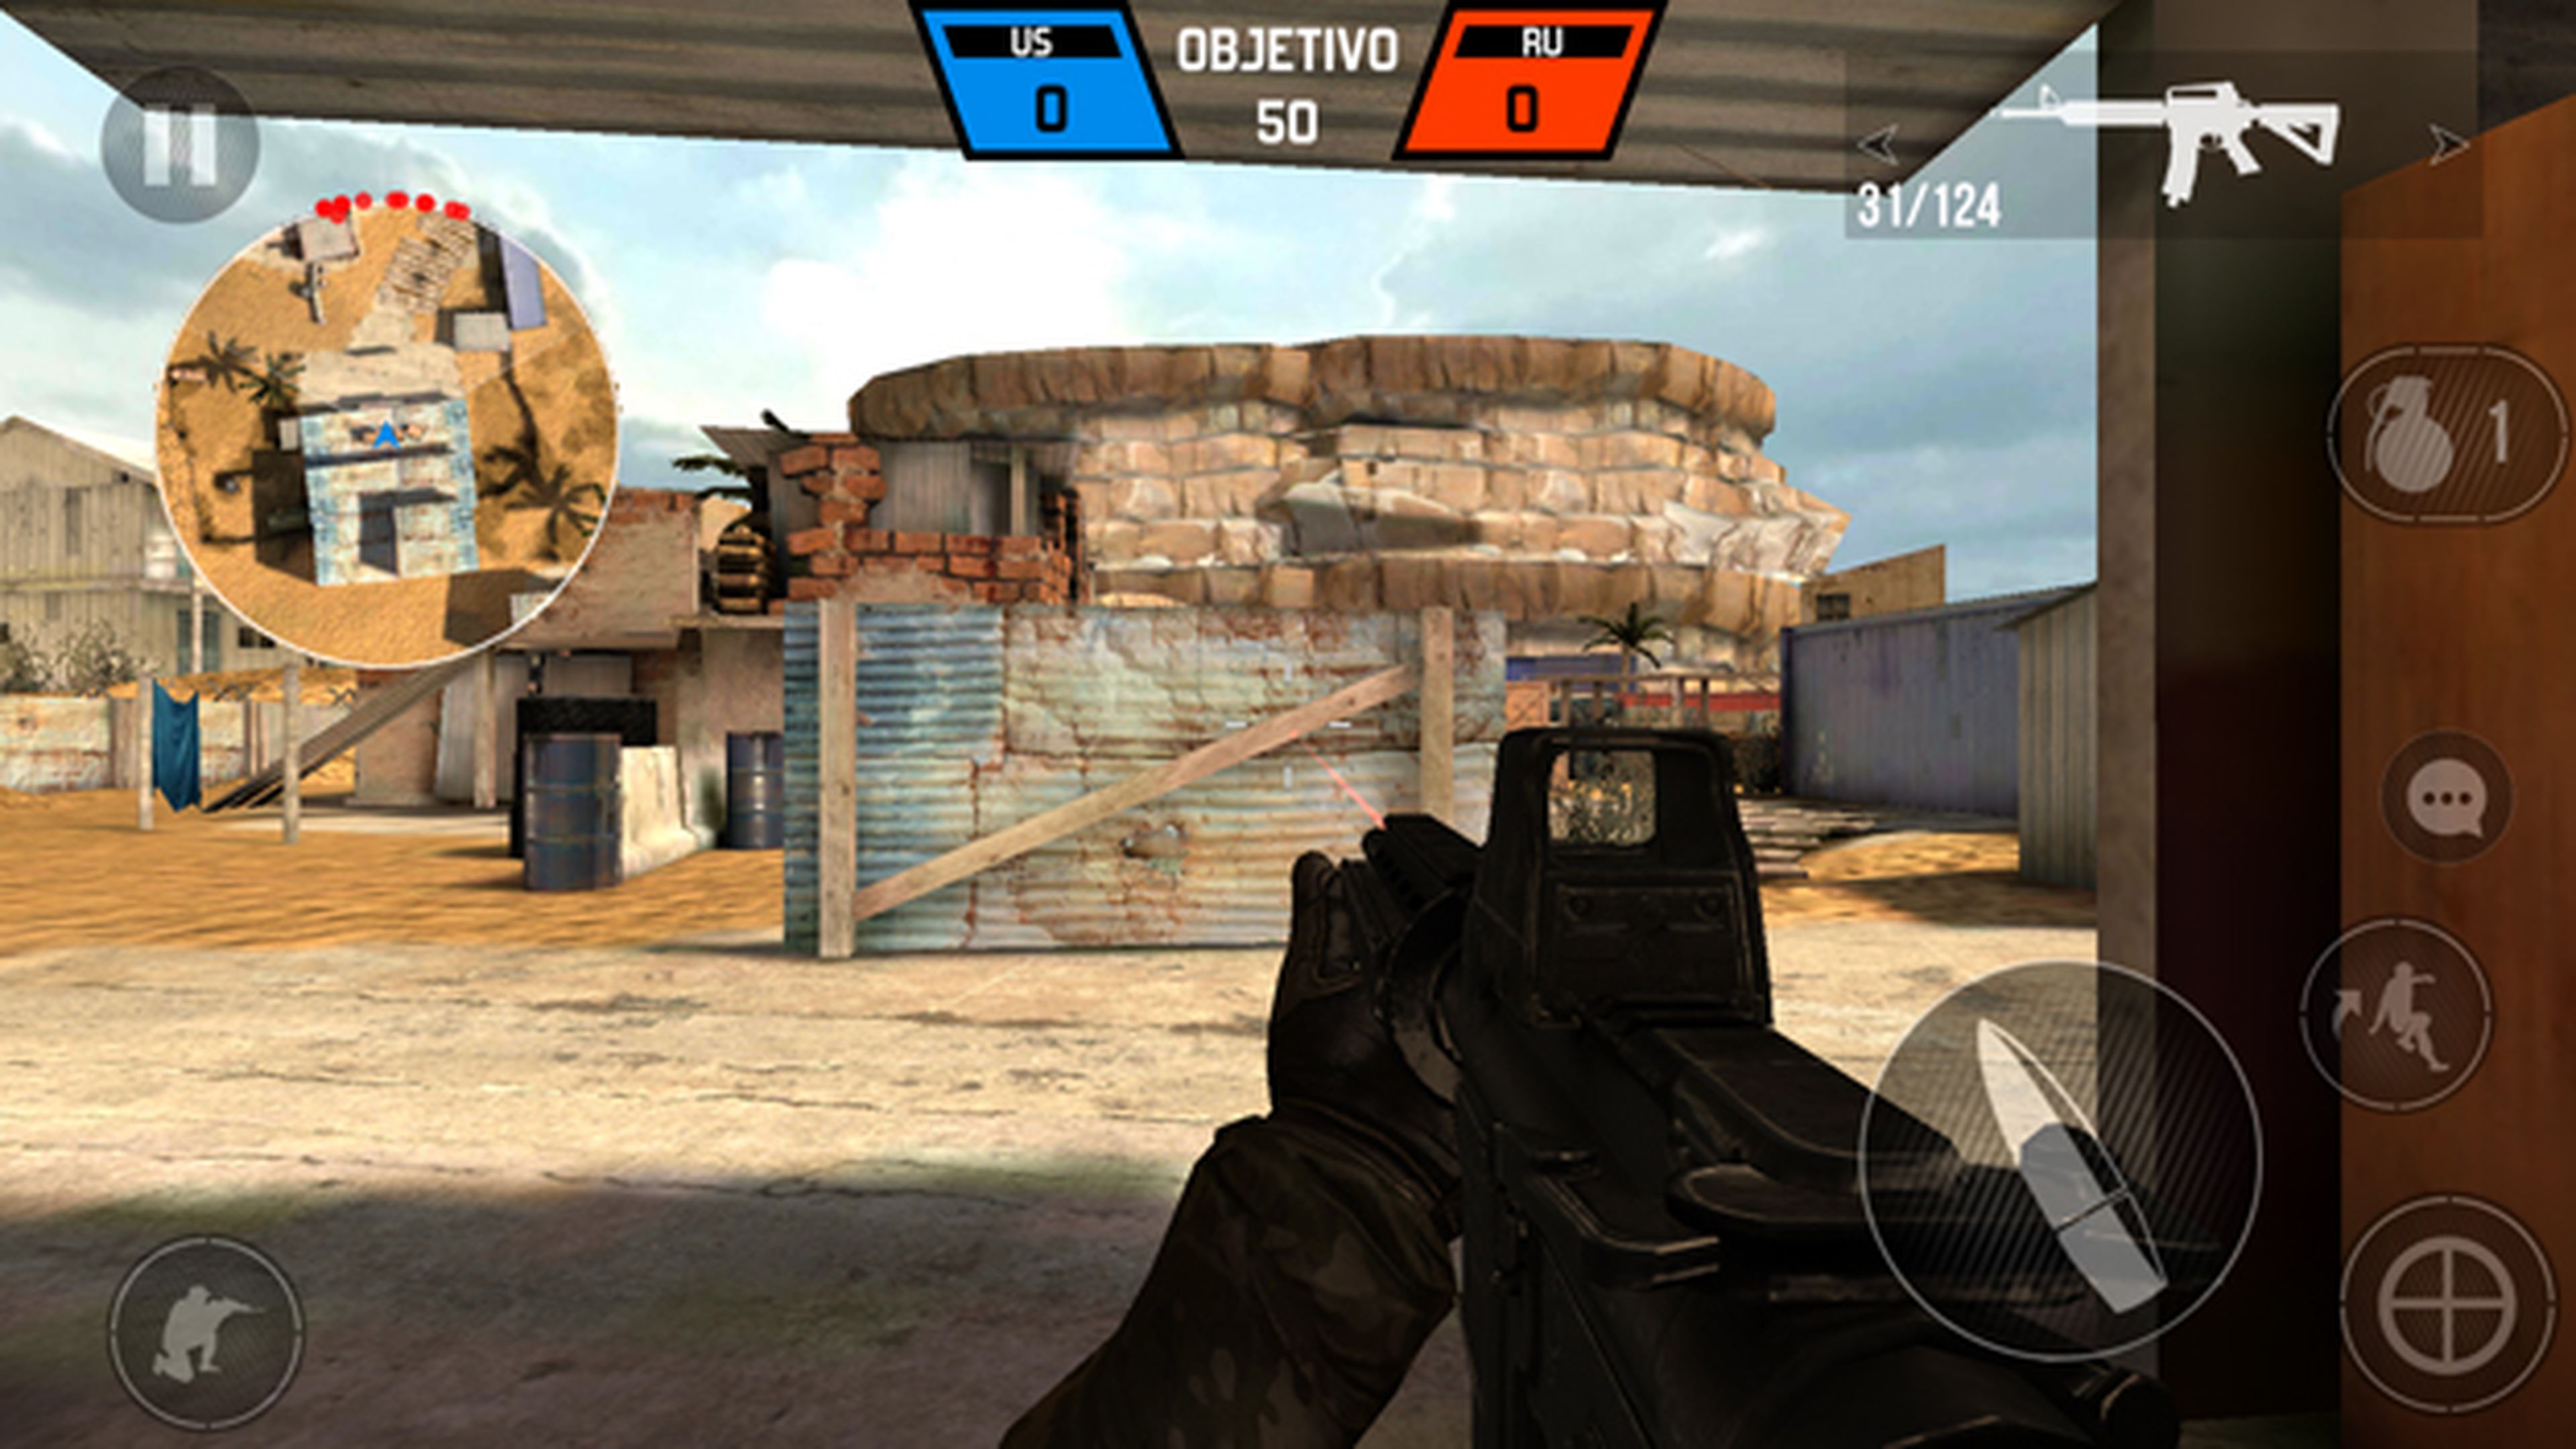 El juego Bullet Force en el Moto G5